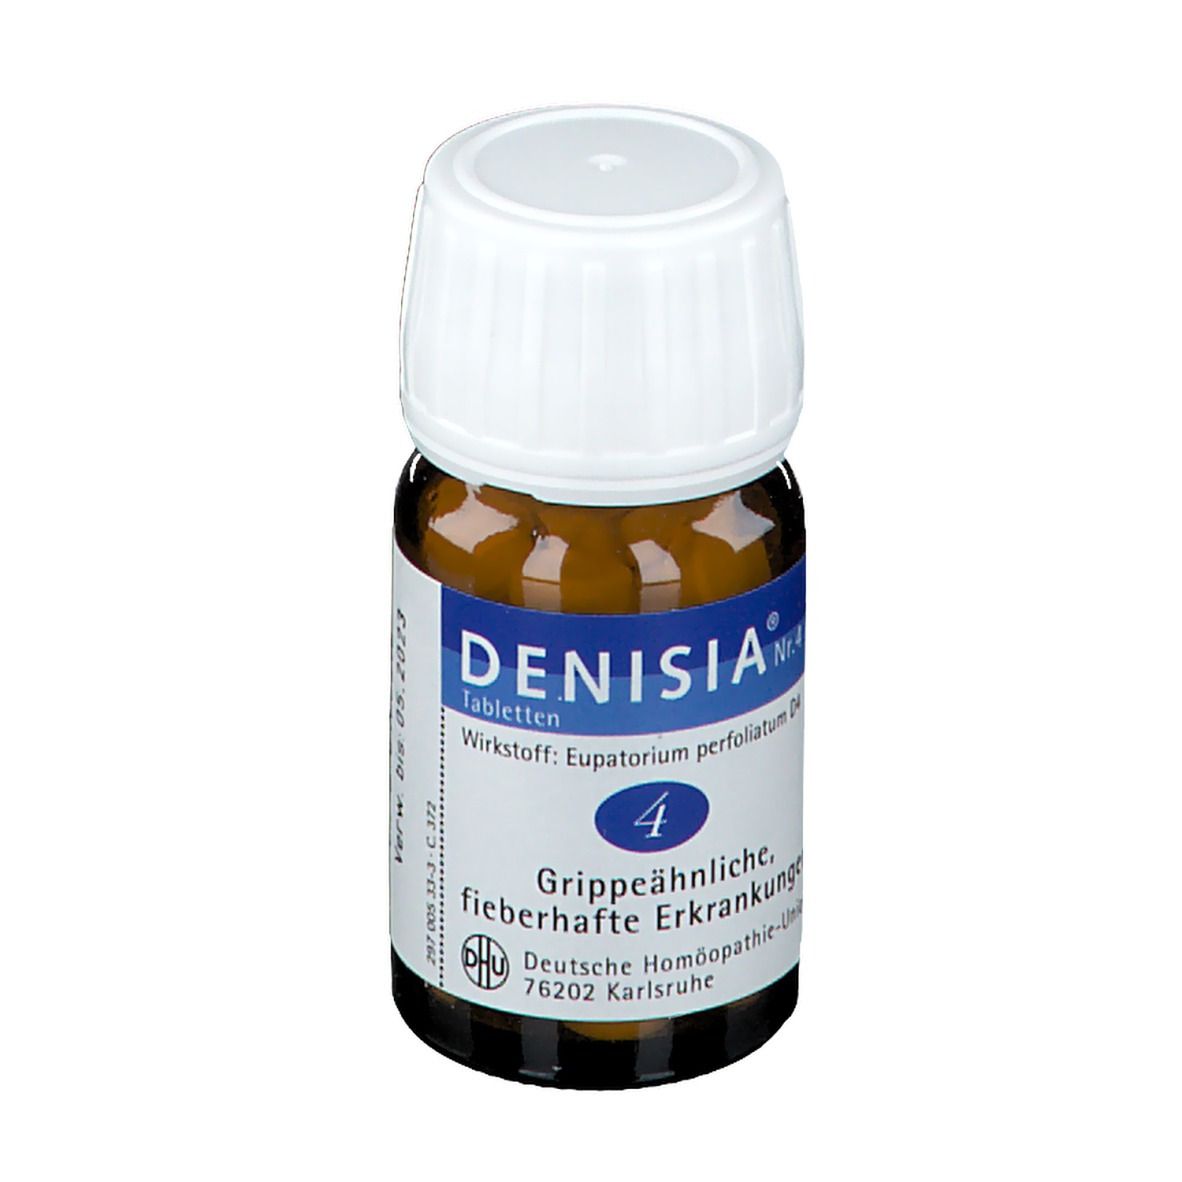 Denisia® Nr.4 bei Grippeähnliche Krankheiten